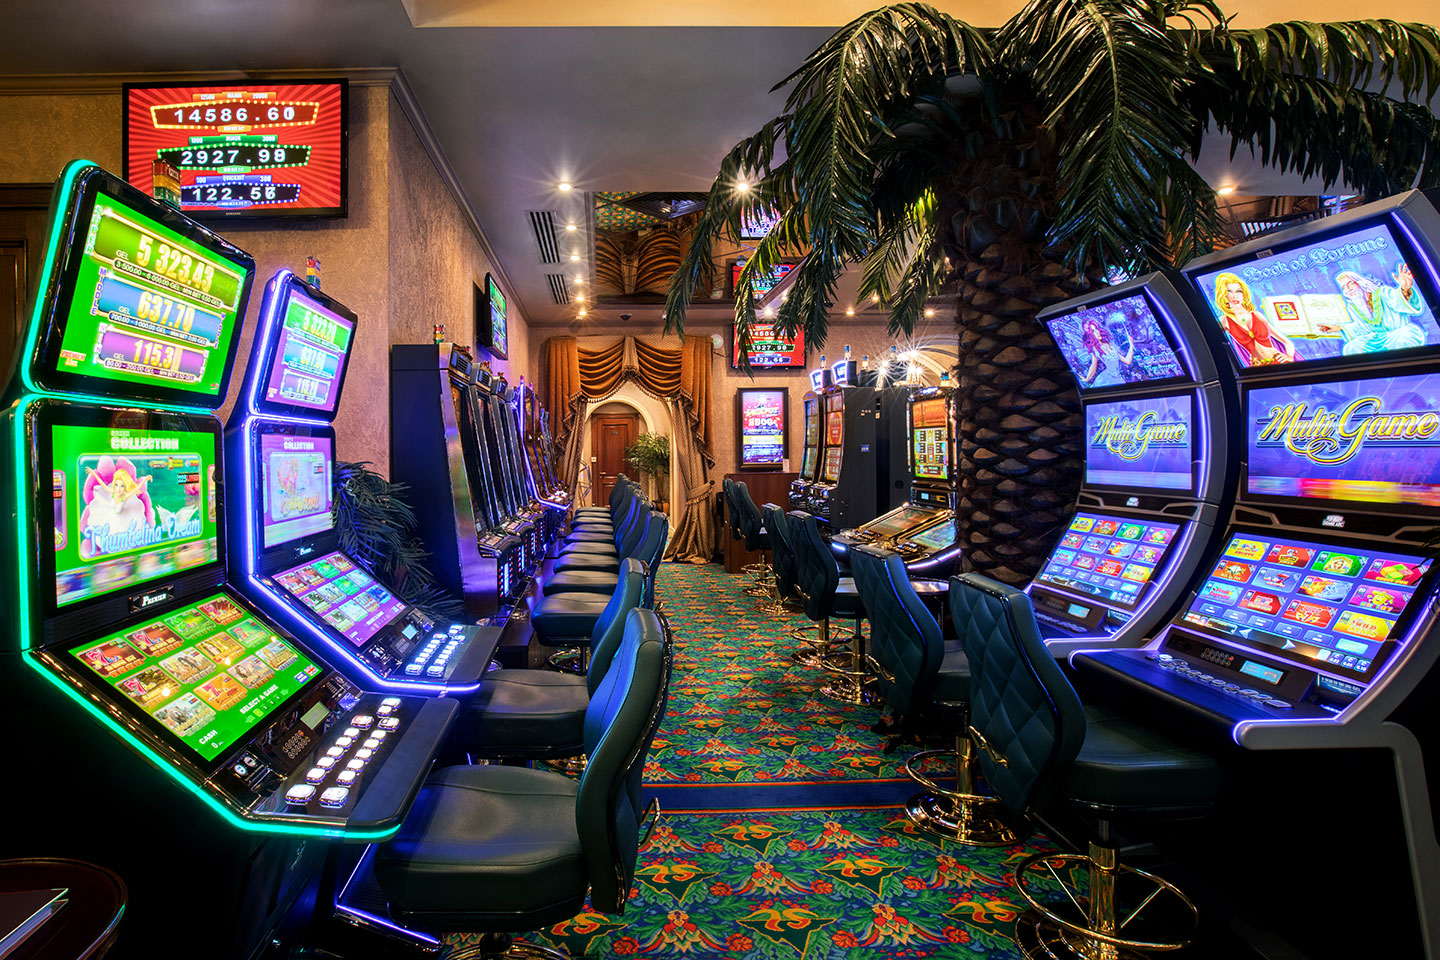 можно в соответствии с законодательством в казино ставить игровые автоматы